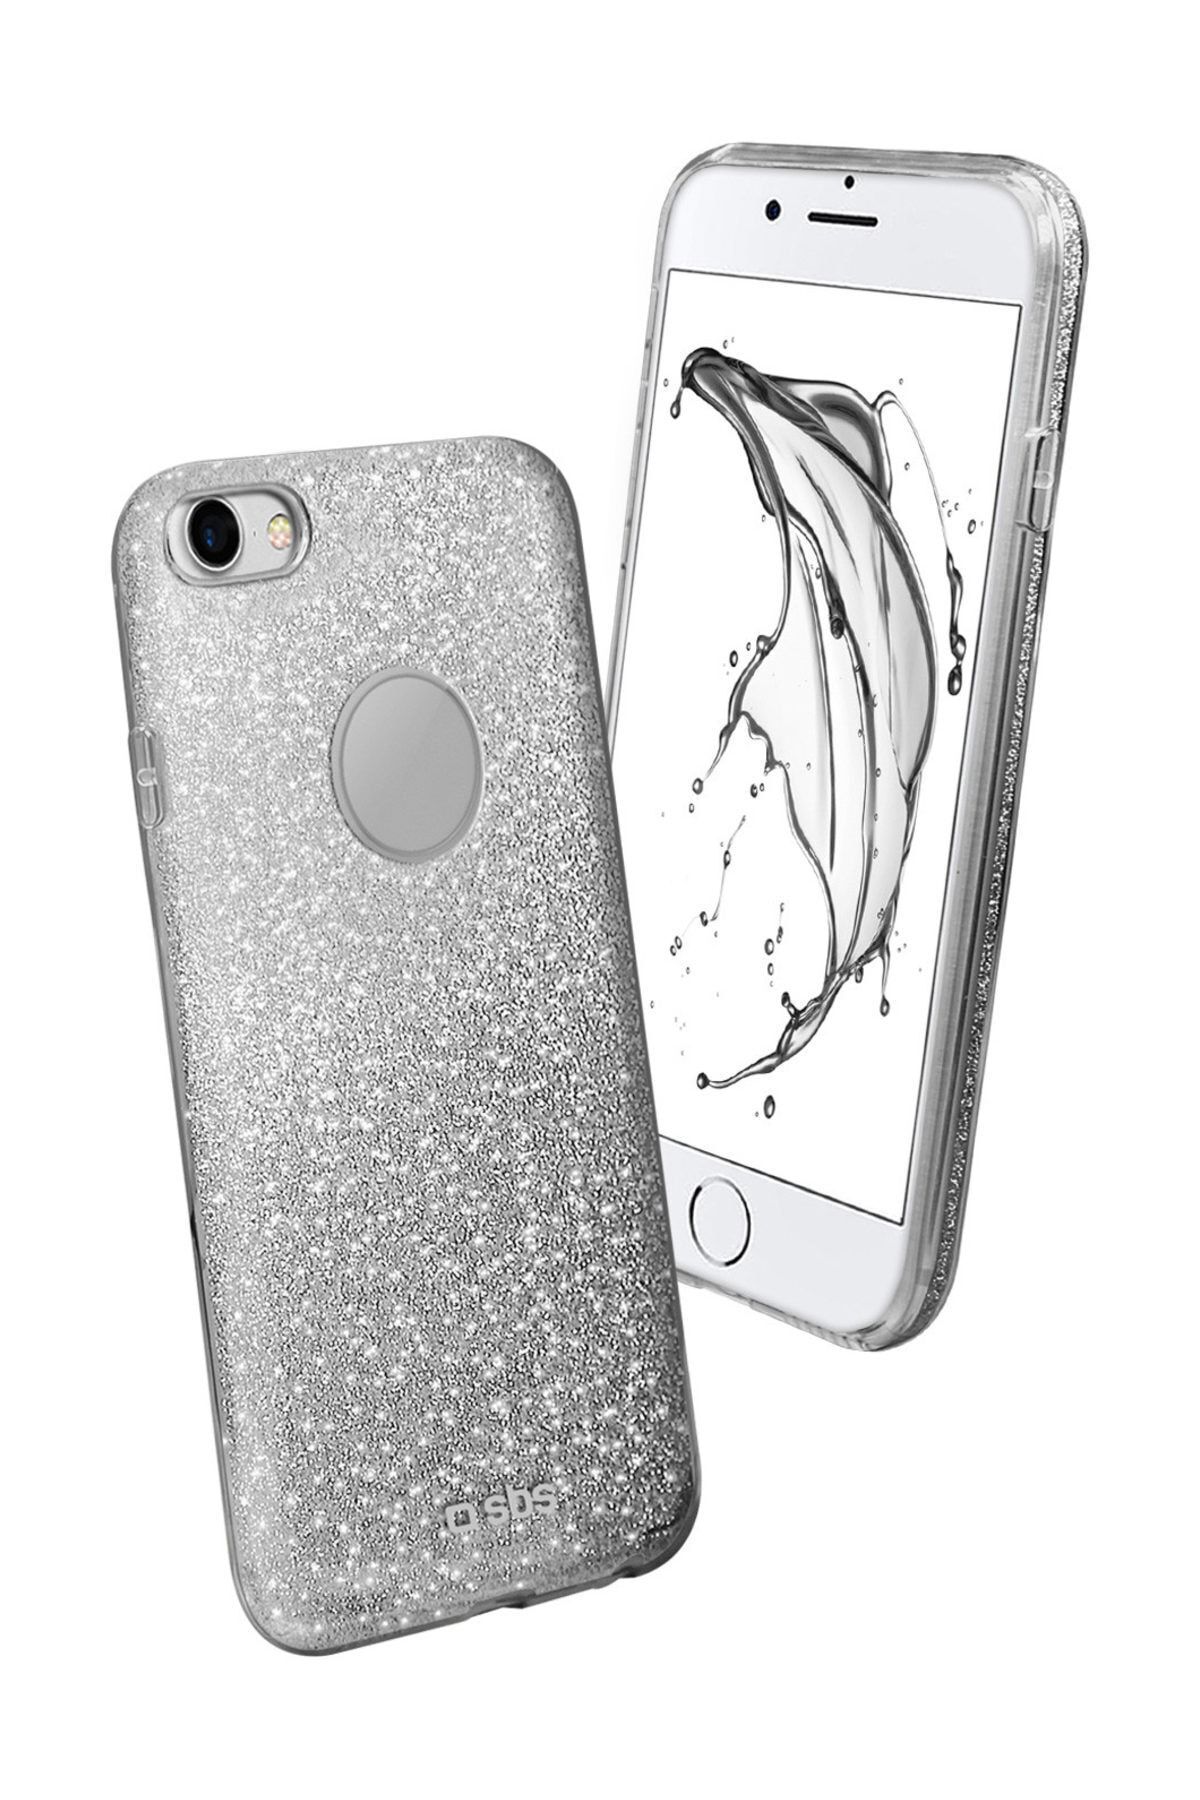 SBS Iphone 7 Simli Kılıf Gümüş